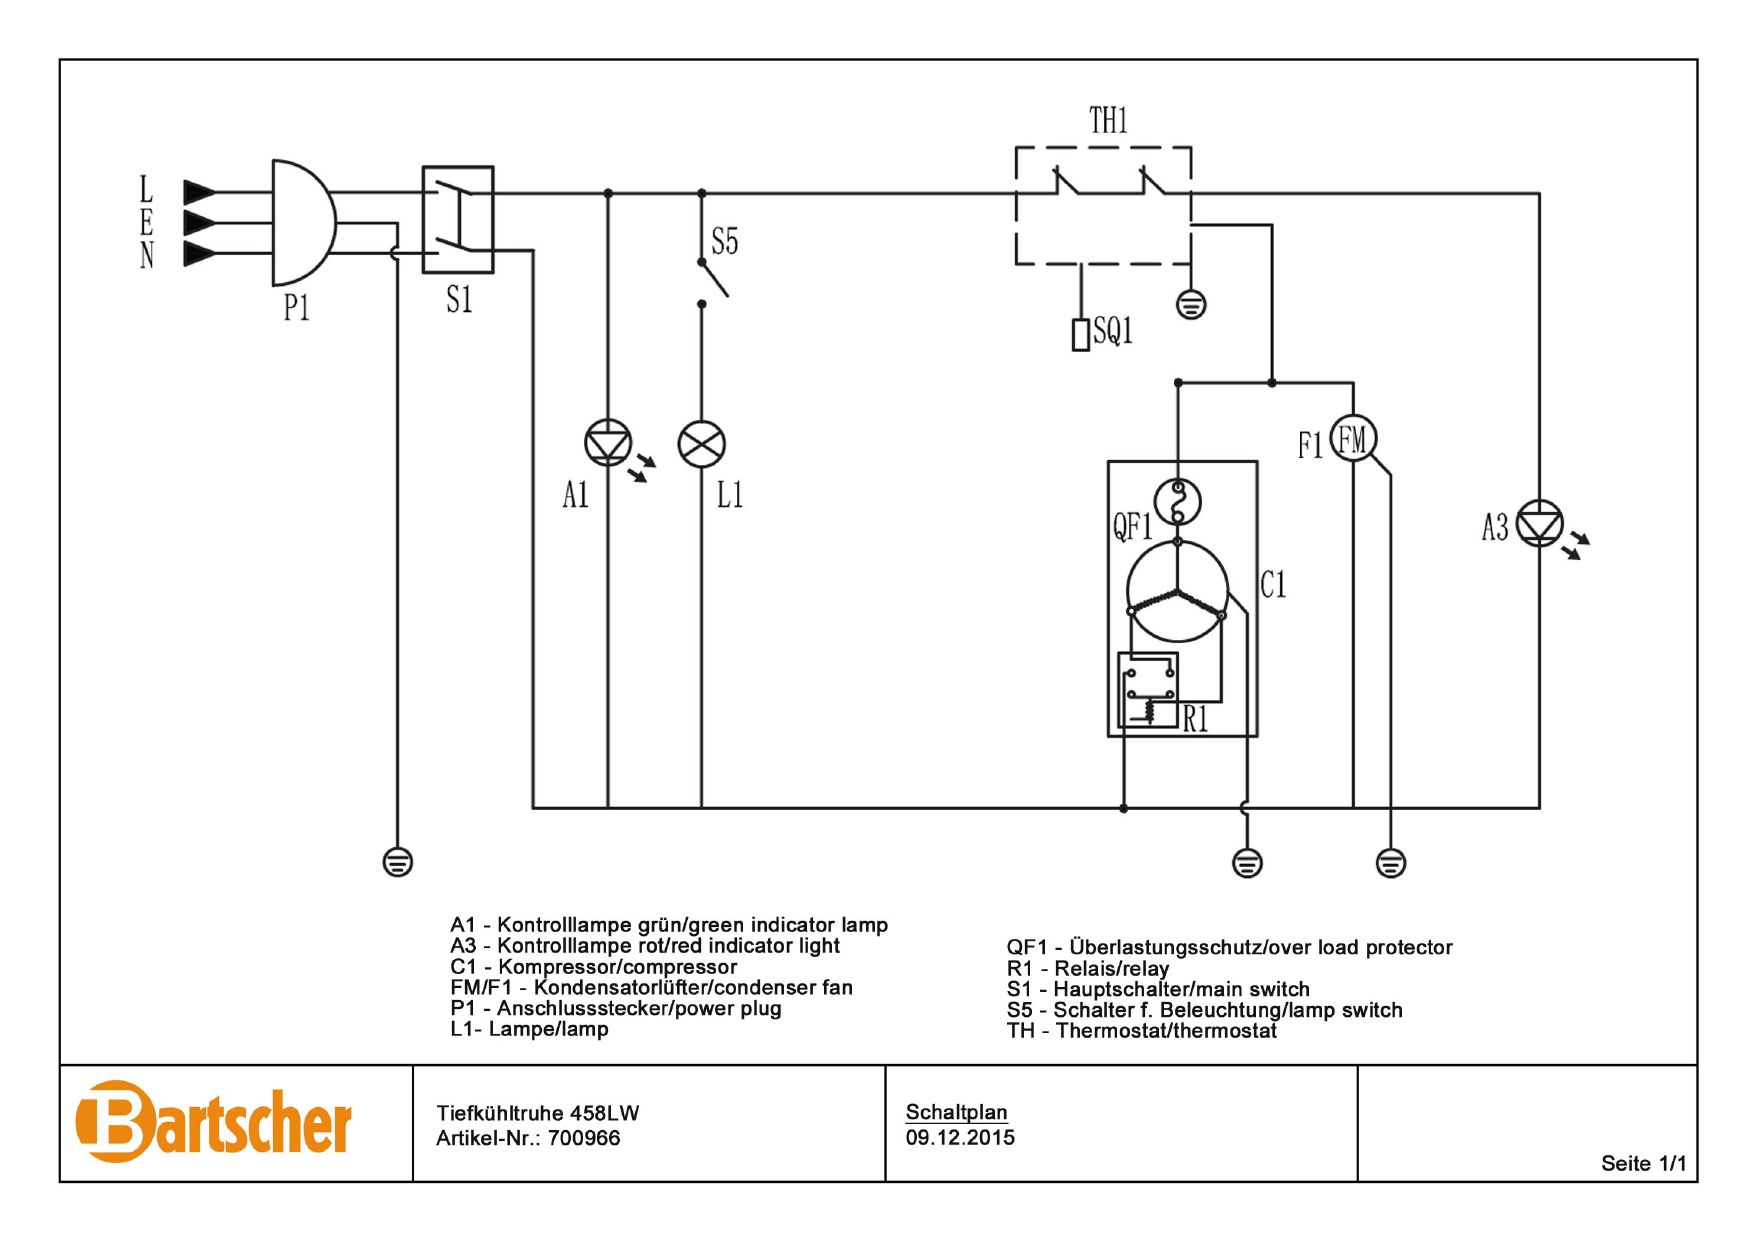 Bartscher 700966 Chest Freezer 458lw Wiring Diagram